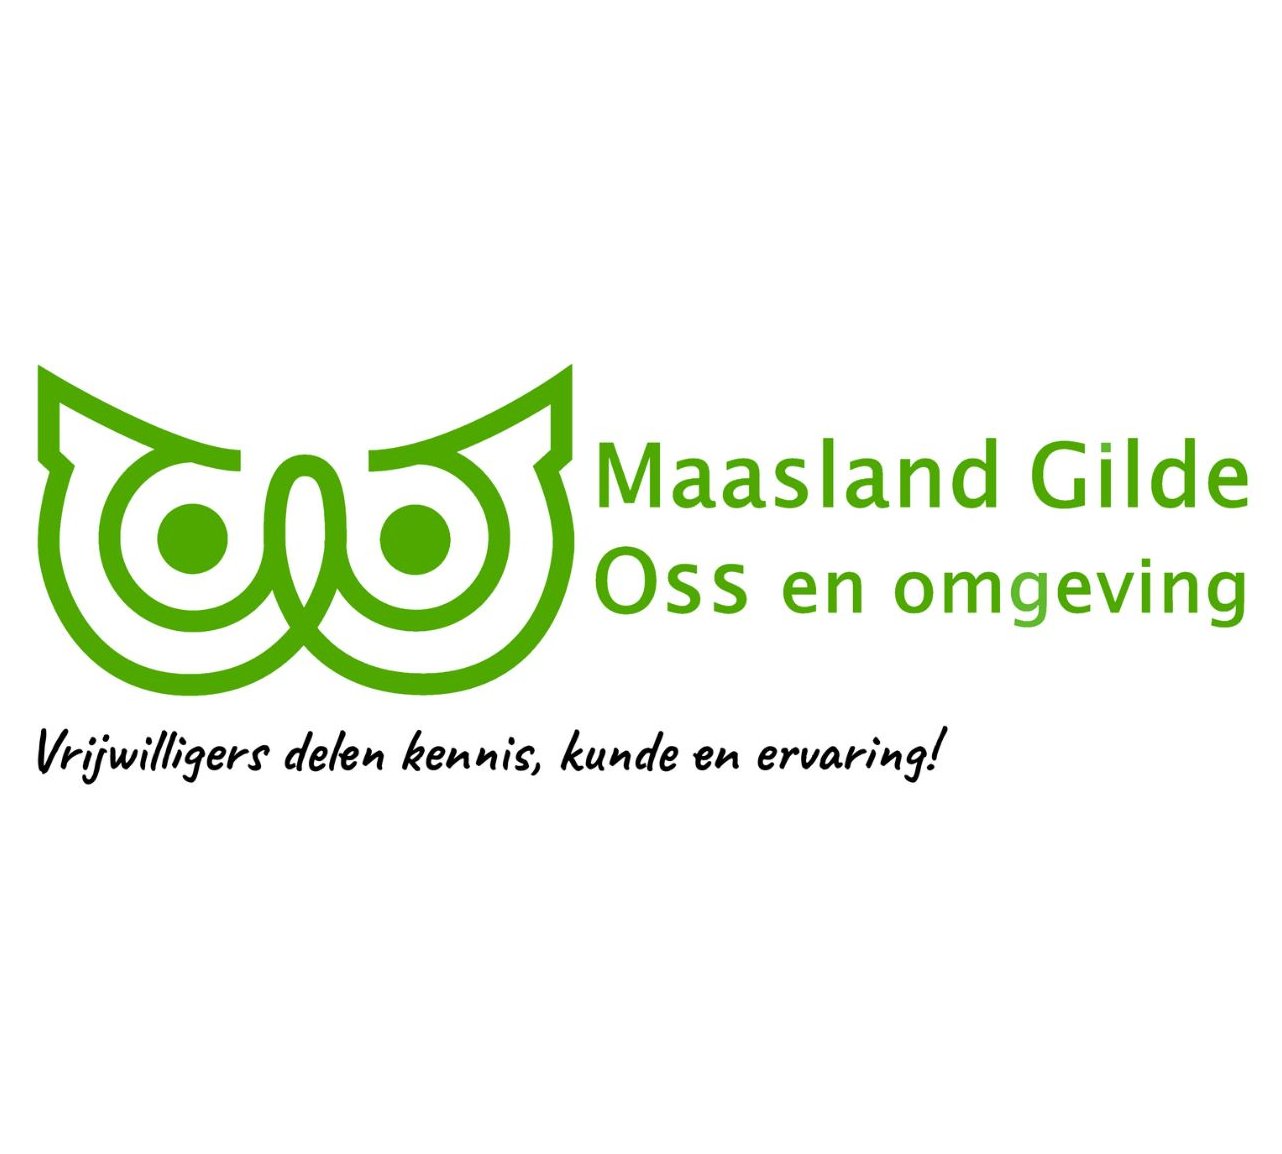 Stichting Maasland Gilde Oss